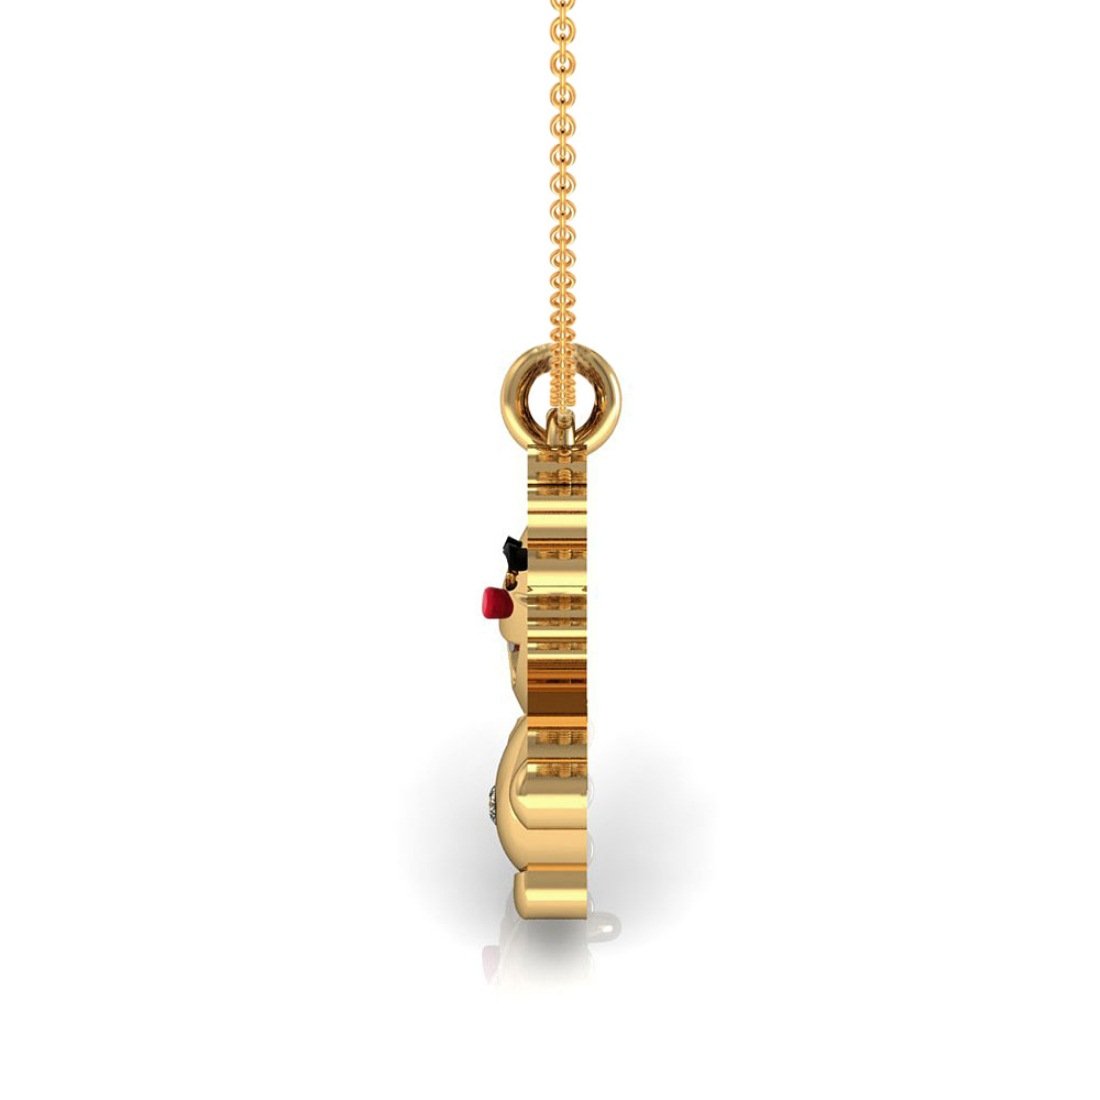 Enamel joker kids pendant with chain 18k gold diamond jewelry